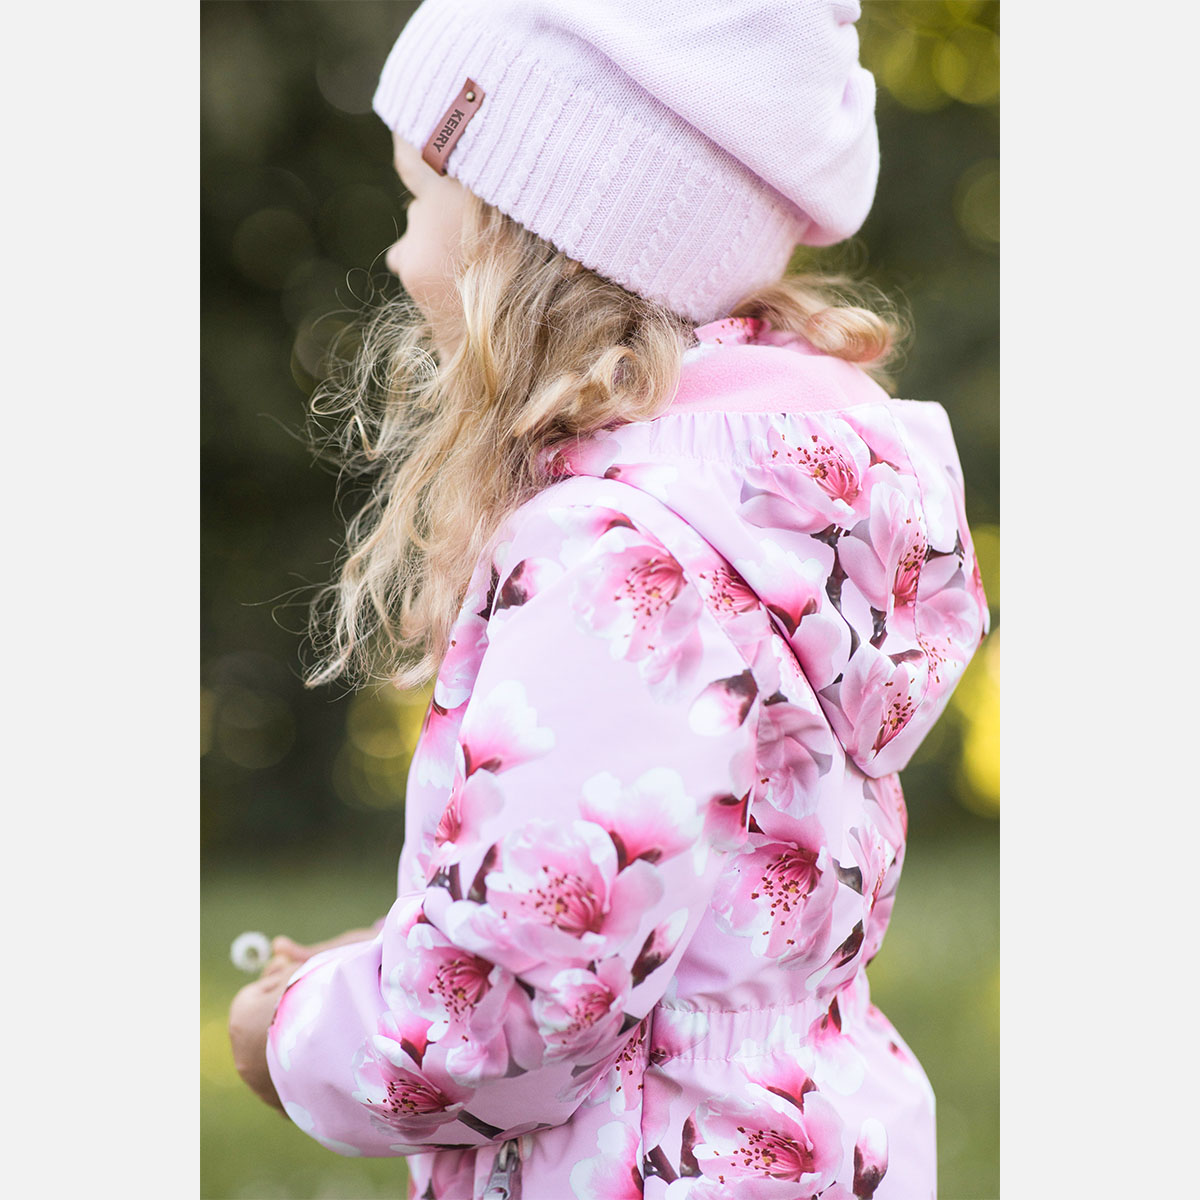 Куртка для девочек KERRY SUNNY K22025-1700 р. 122, цв. 1700-розовый с цв.ами